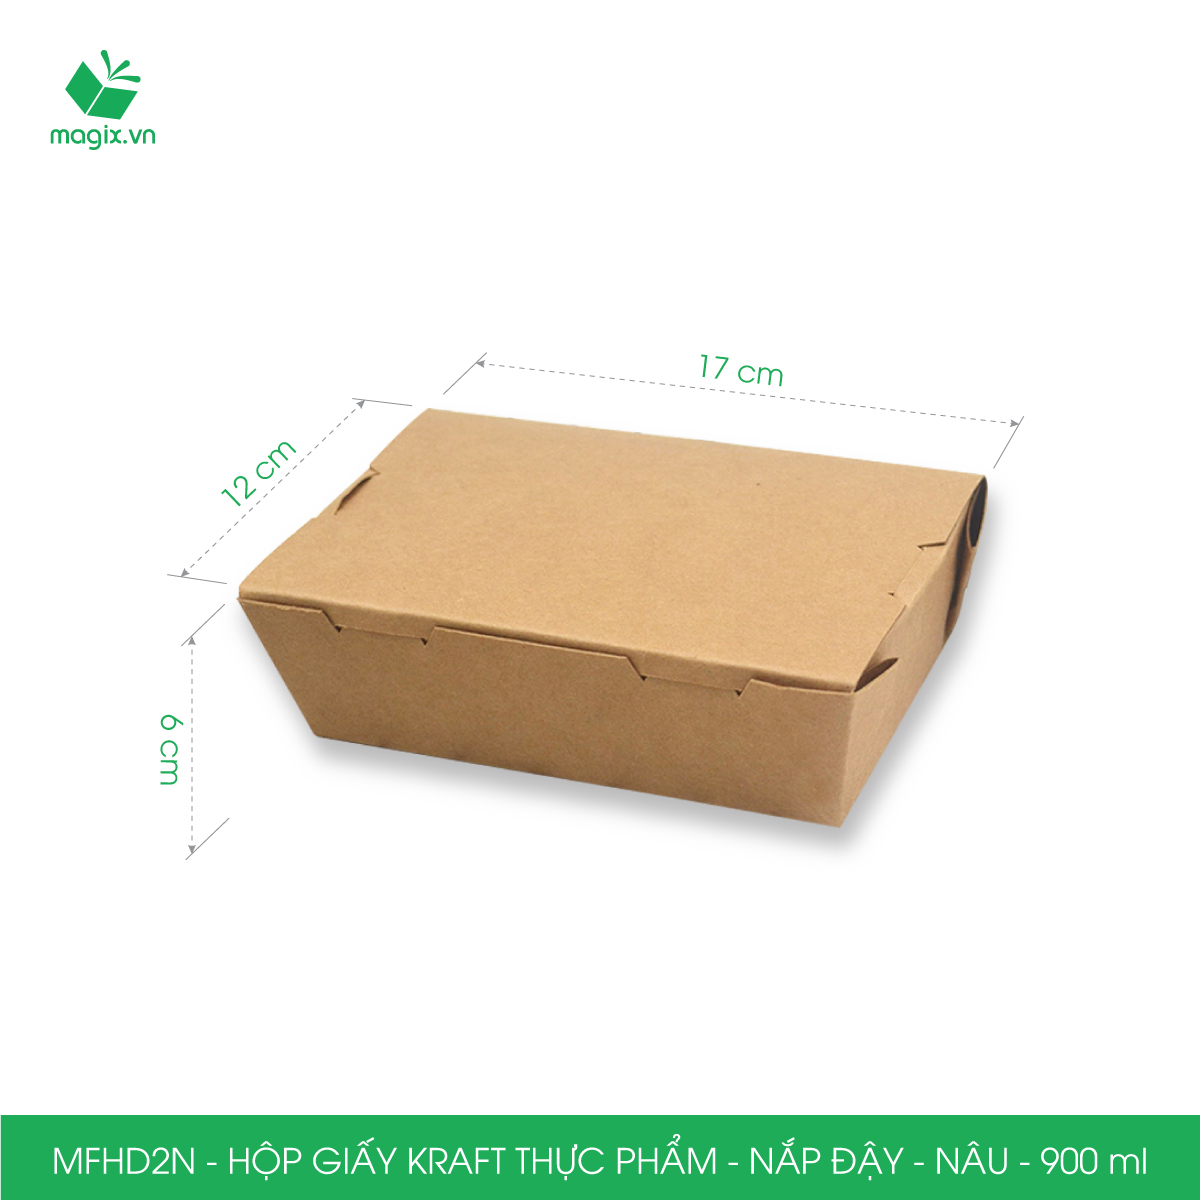 MFHD2N - Combo 50 hộp giấy kraft thực phẩm 900ml, hộp đựng thức ăn nắp đậy màu nâu, hộp gói đồ ăn mang đi